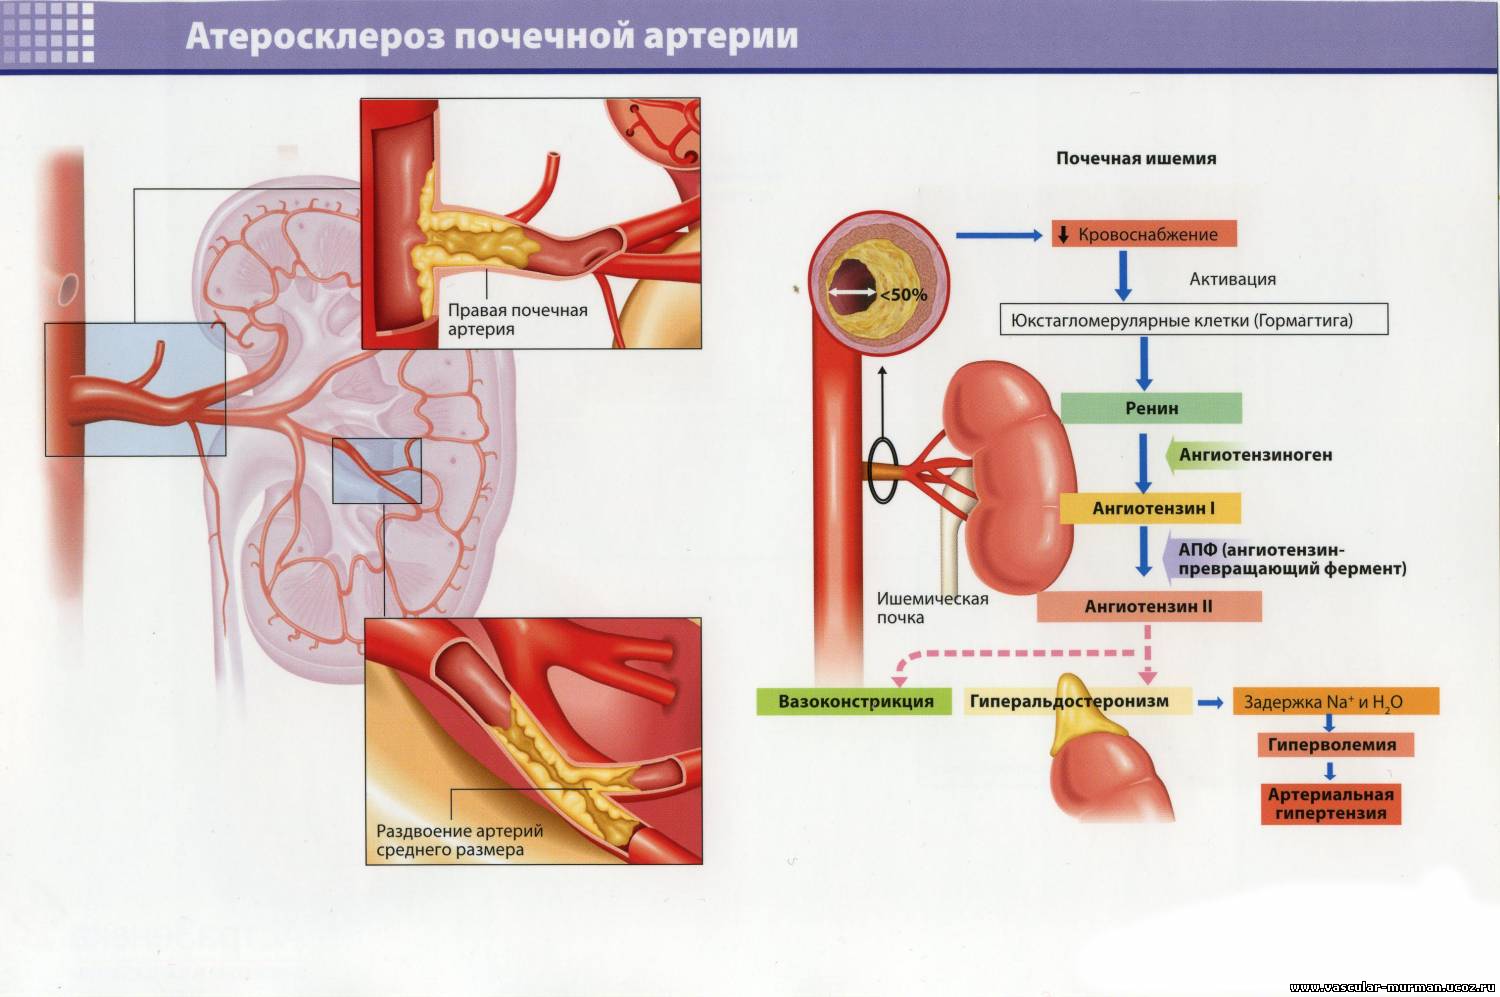 Тромбоз почечной артерии. Атеросклероз артерий почек почечная форма. Осложнения атеросклероза артерий почек. Атеросклероз почечных сосудов характеризуется:. Гипертоническая болезнь сосуды почек.